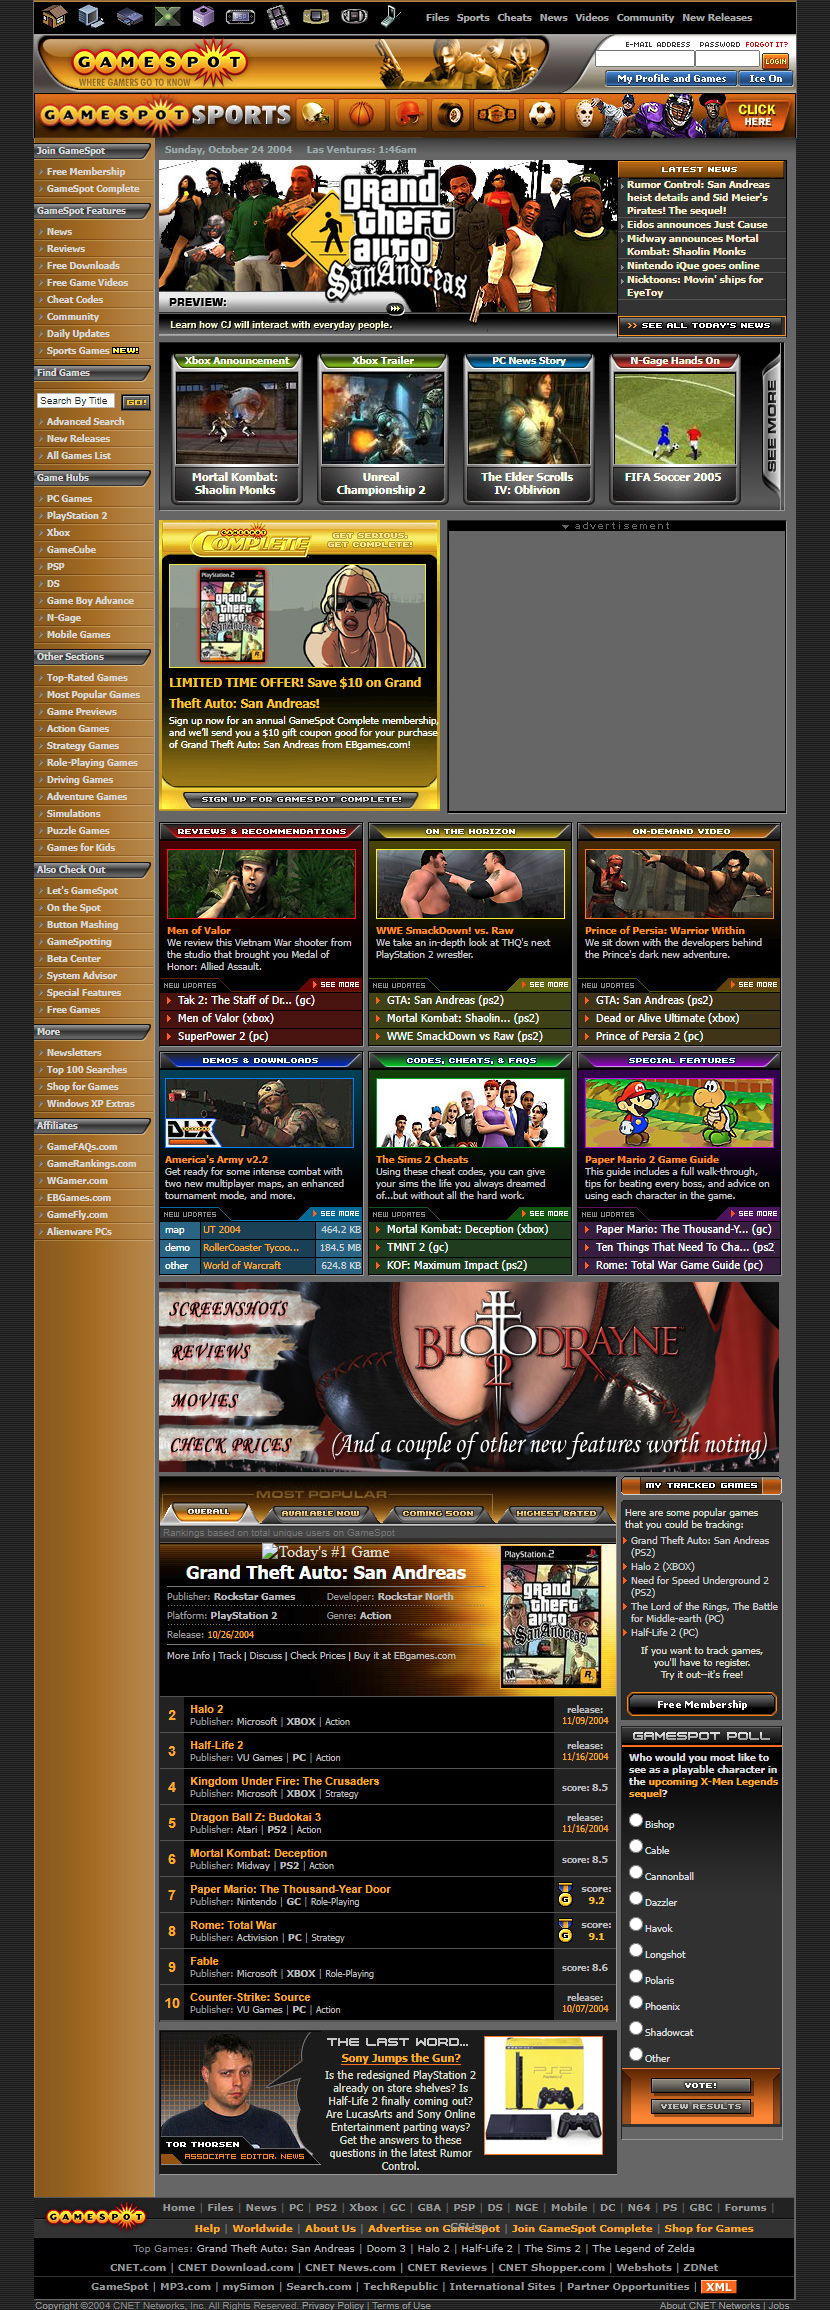 GameSpot website in 2004